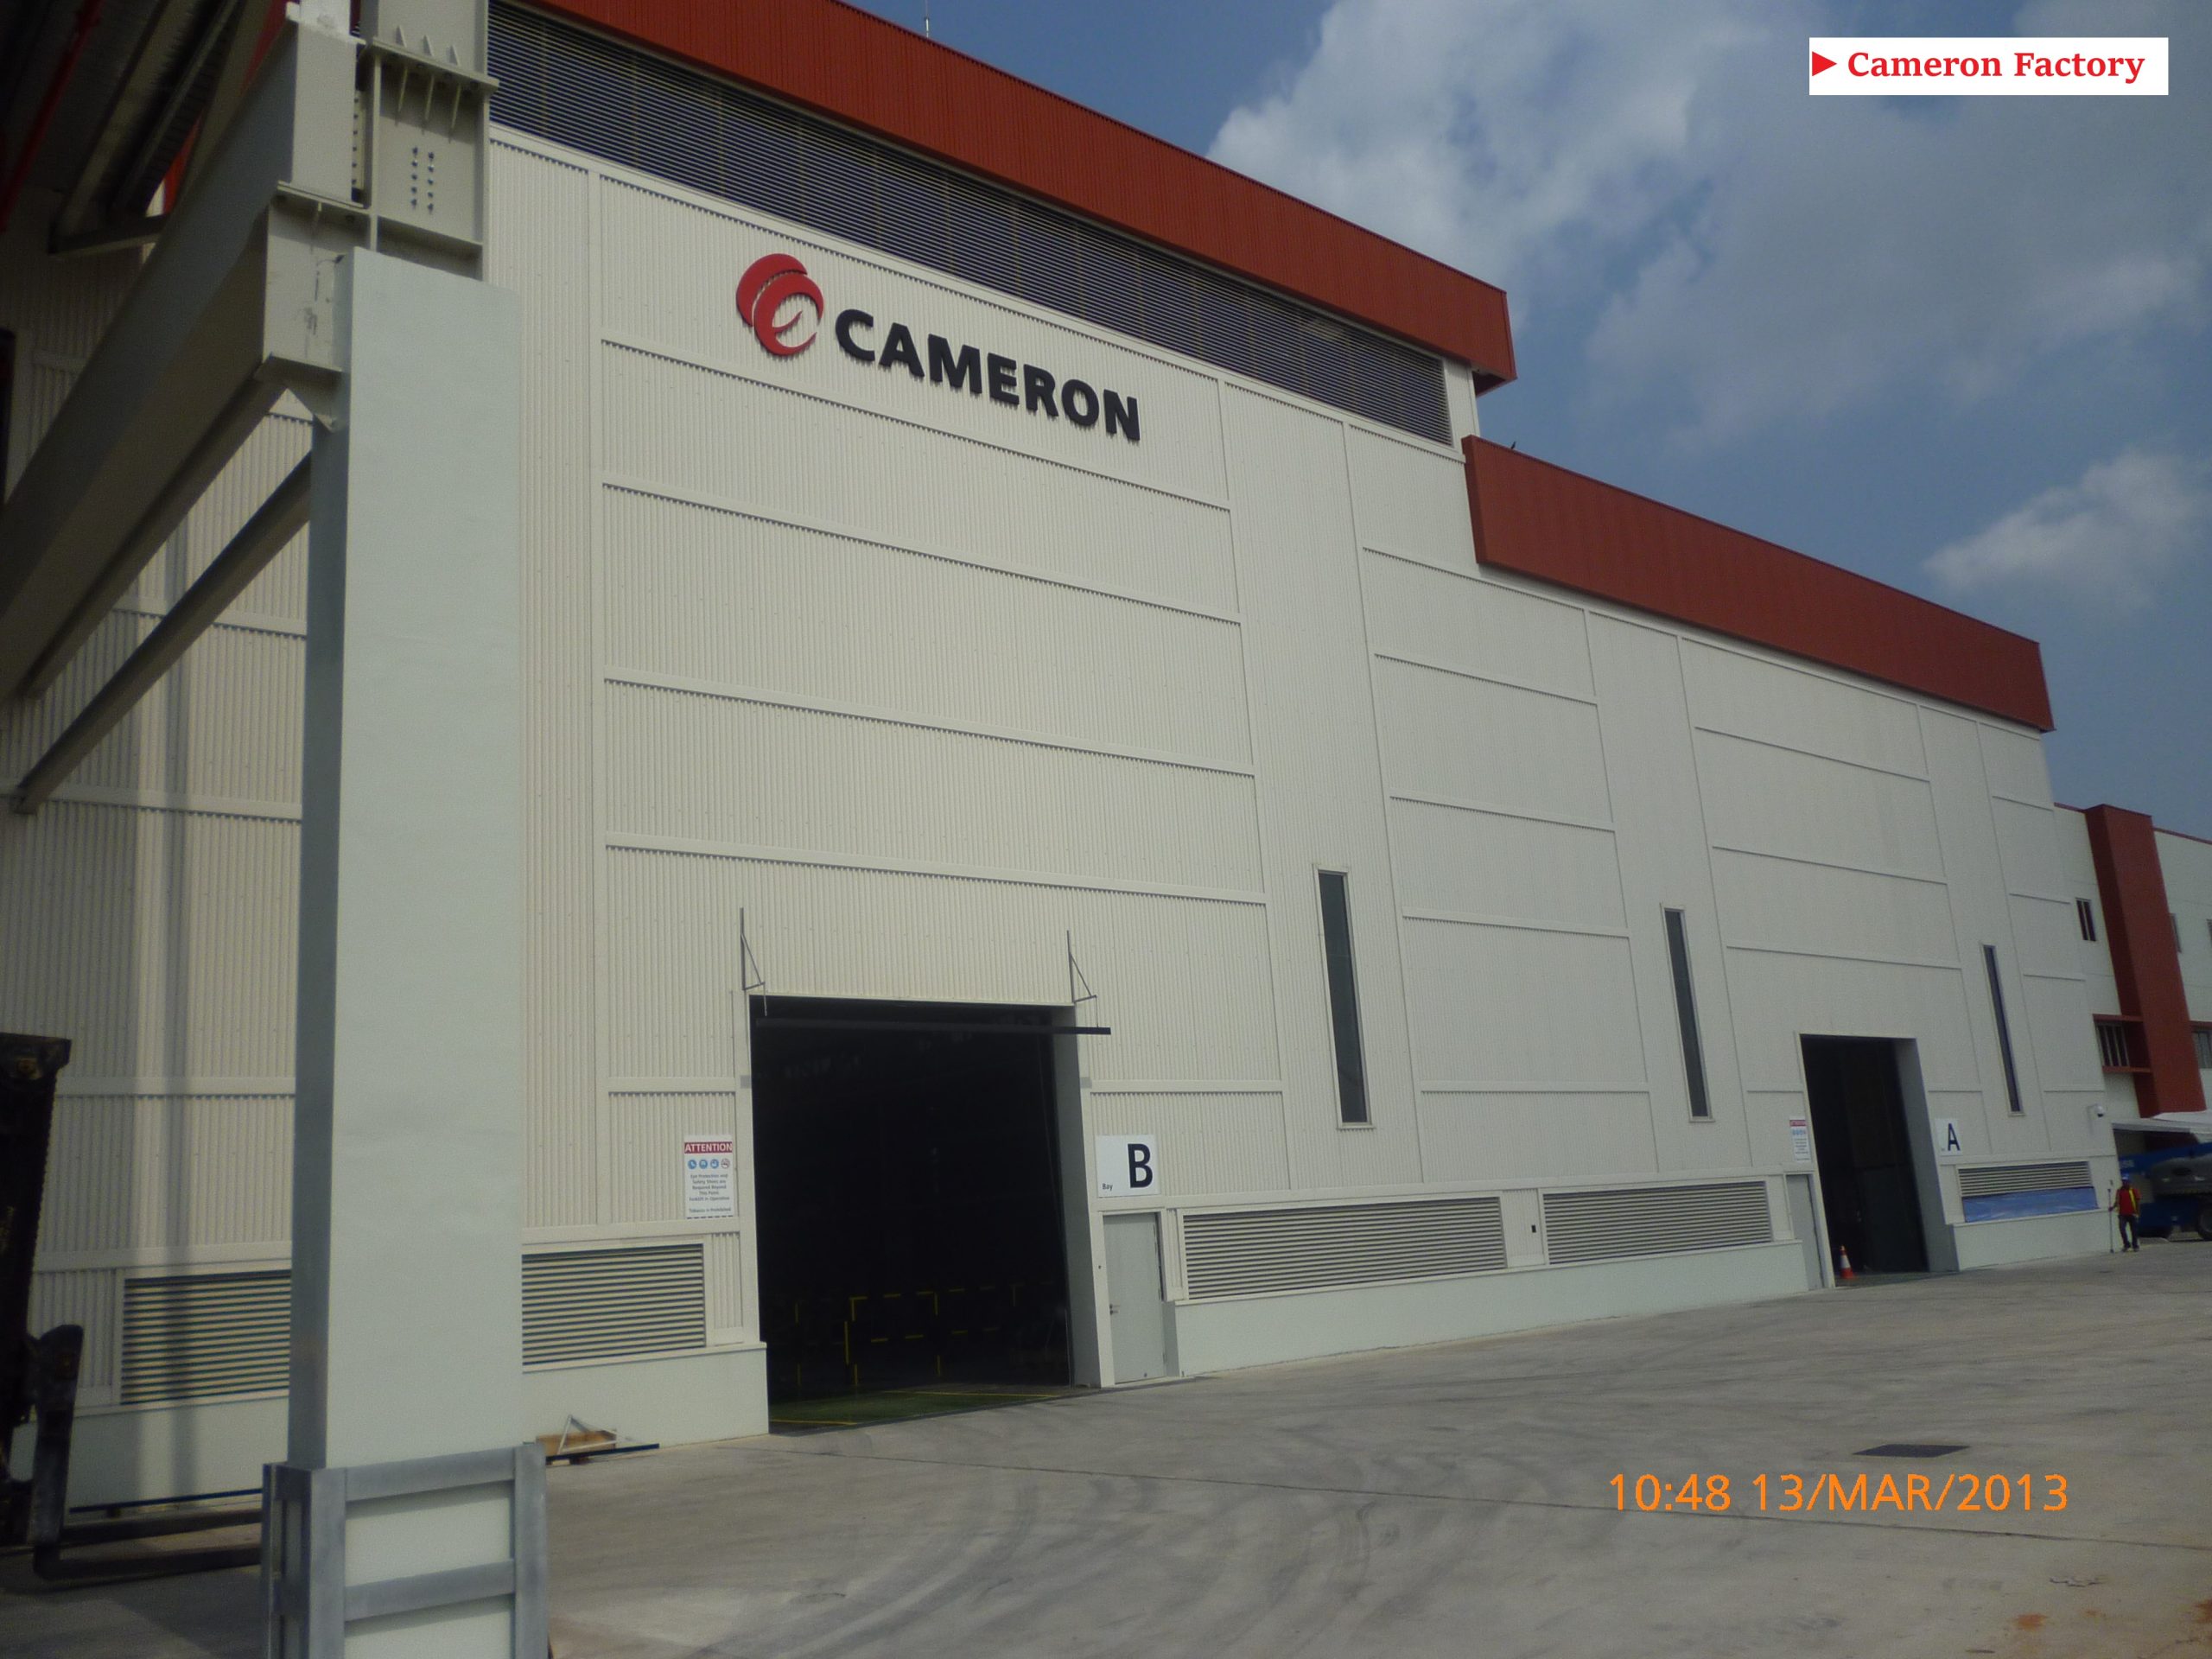 Cameron Factory